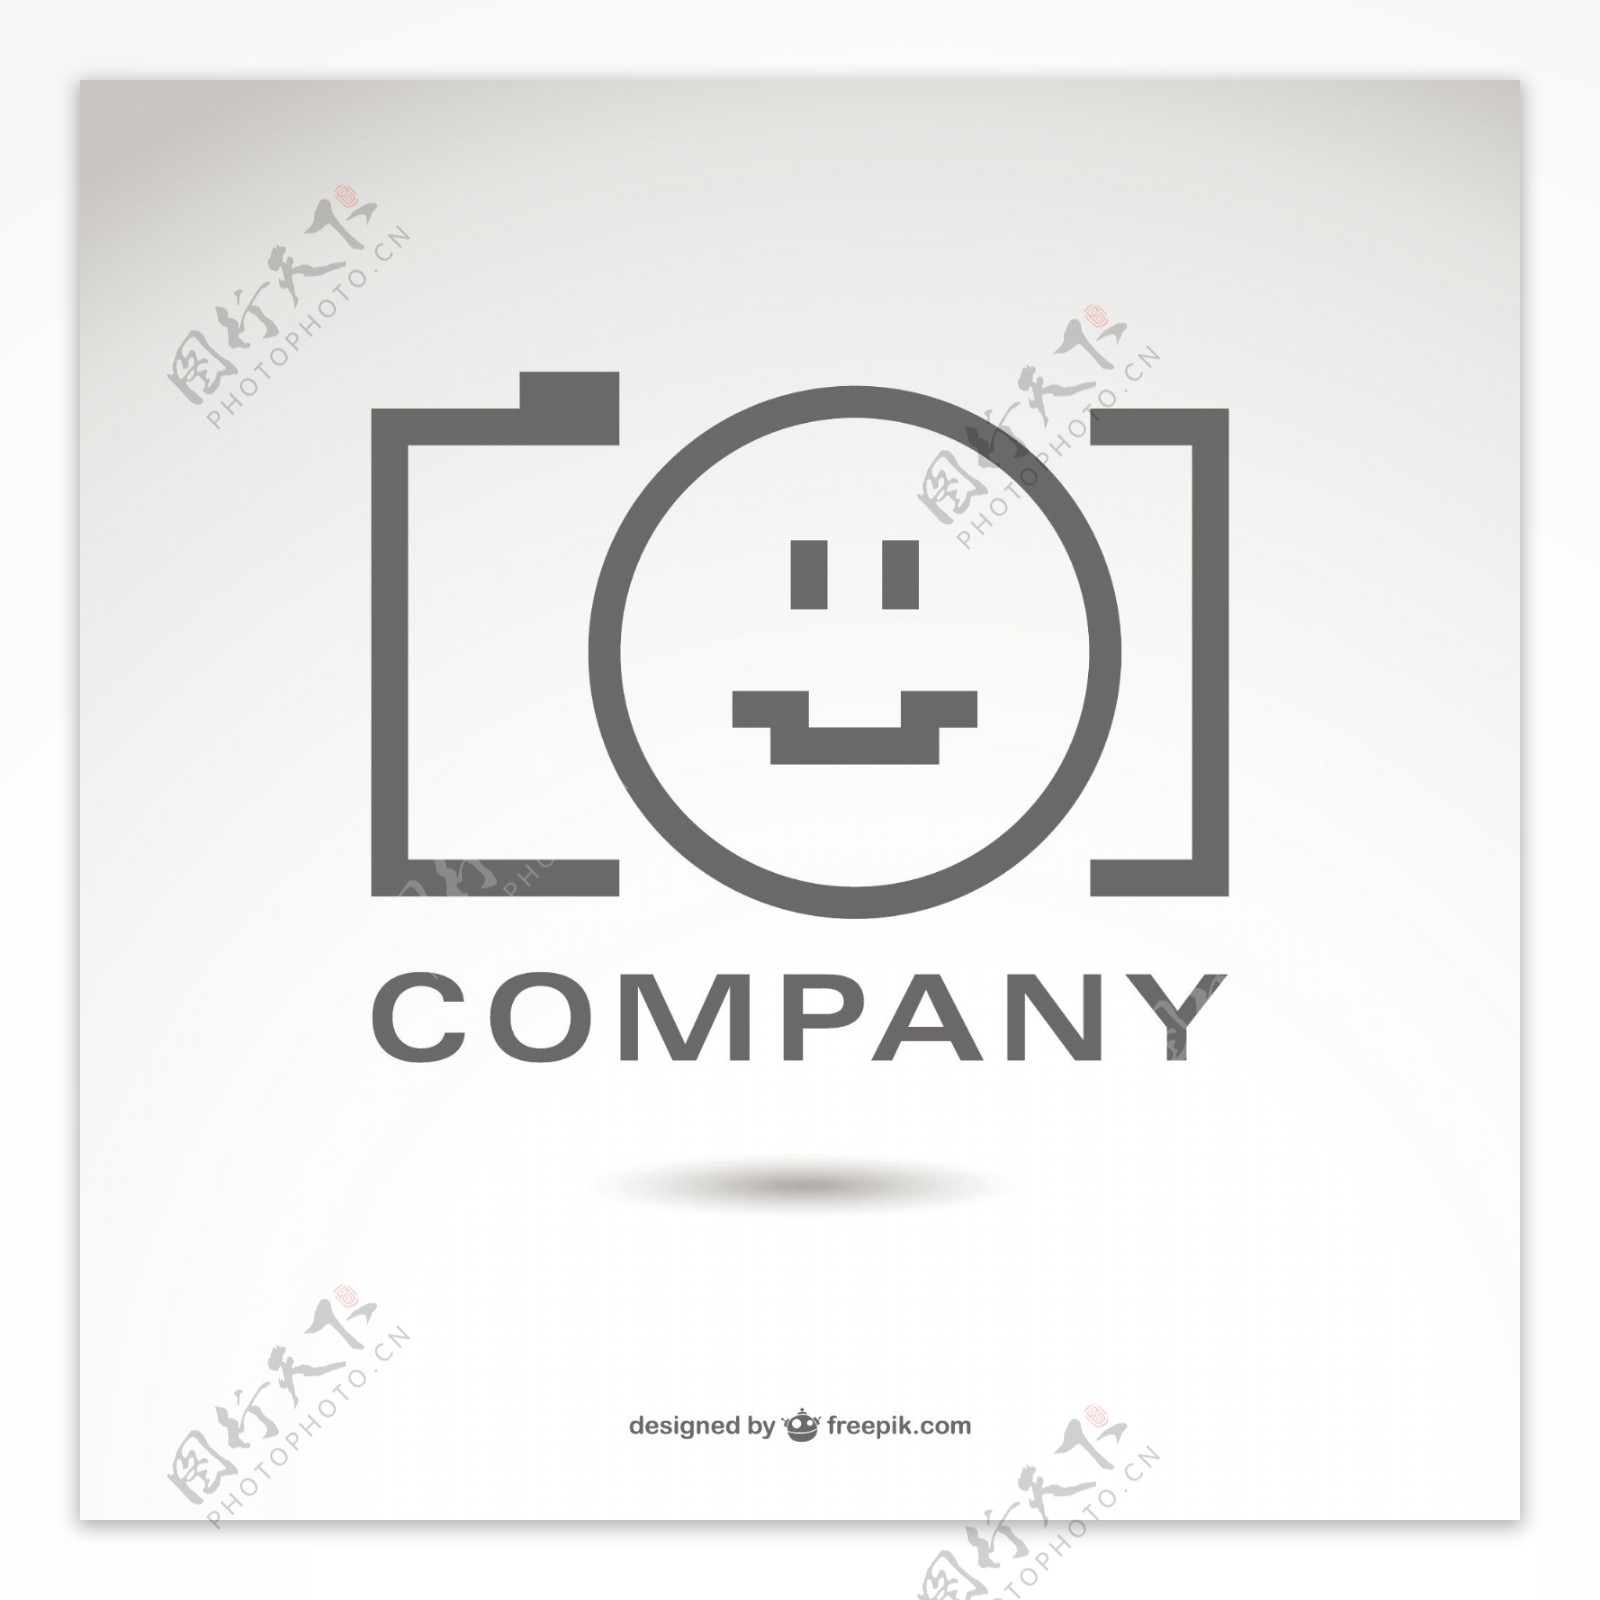 摄影公司标志